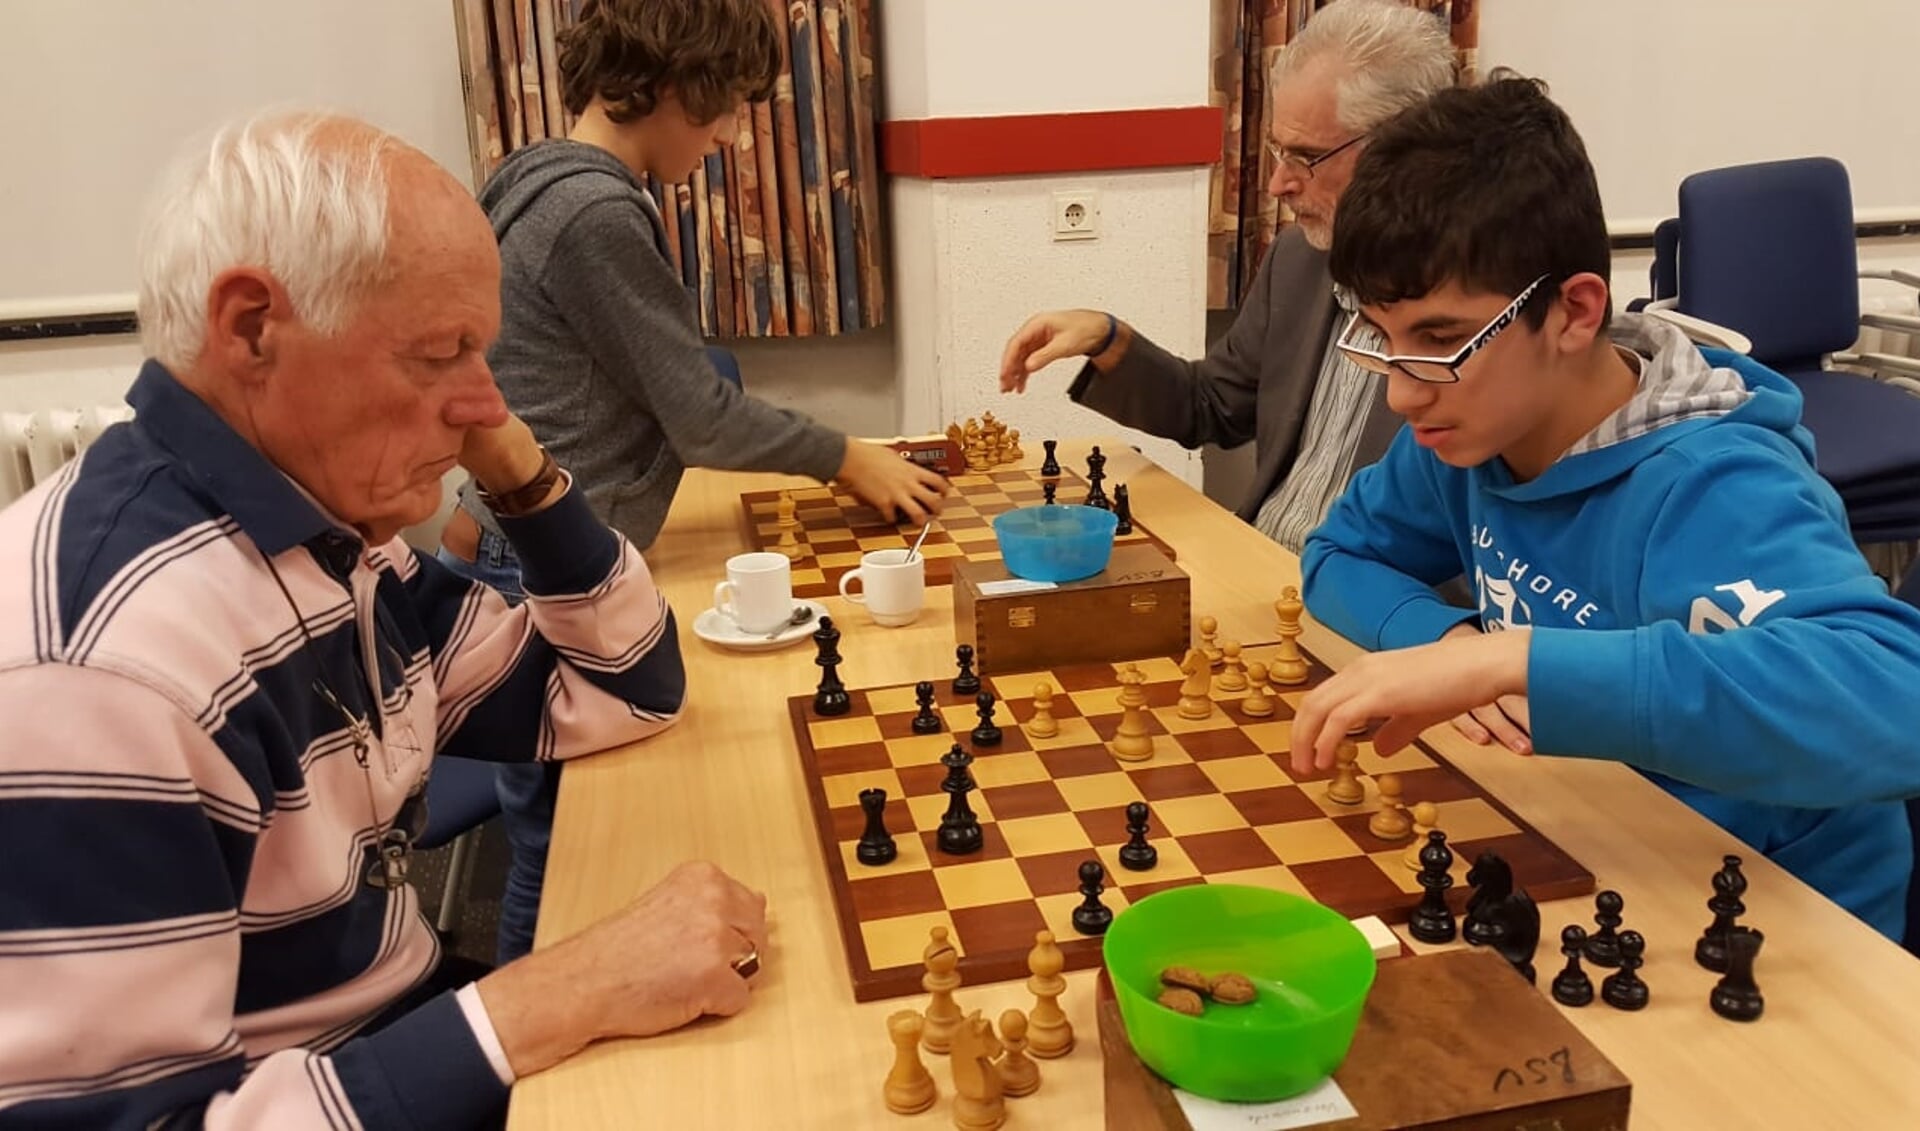 Rechts het winnende koppel. Michael Isa (tegen jeugdleider Jan Wouters) en Hans van de Weteringh (tegen Maxim Huirne).